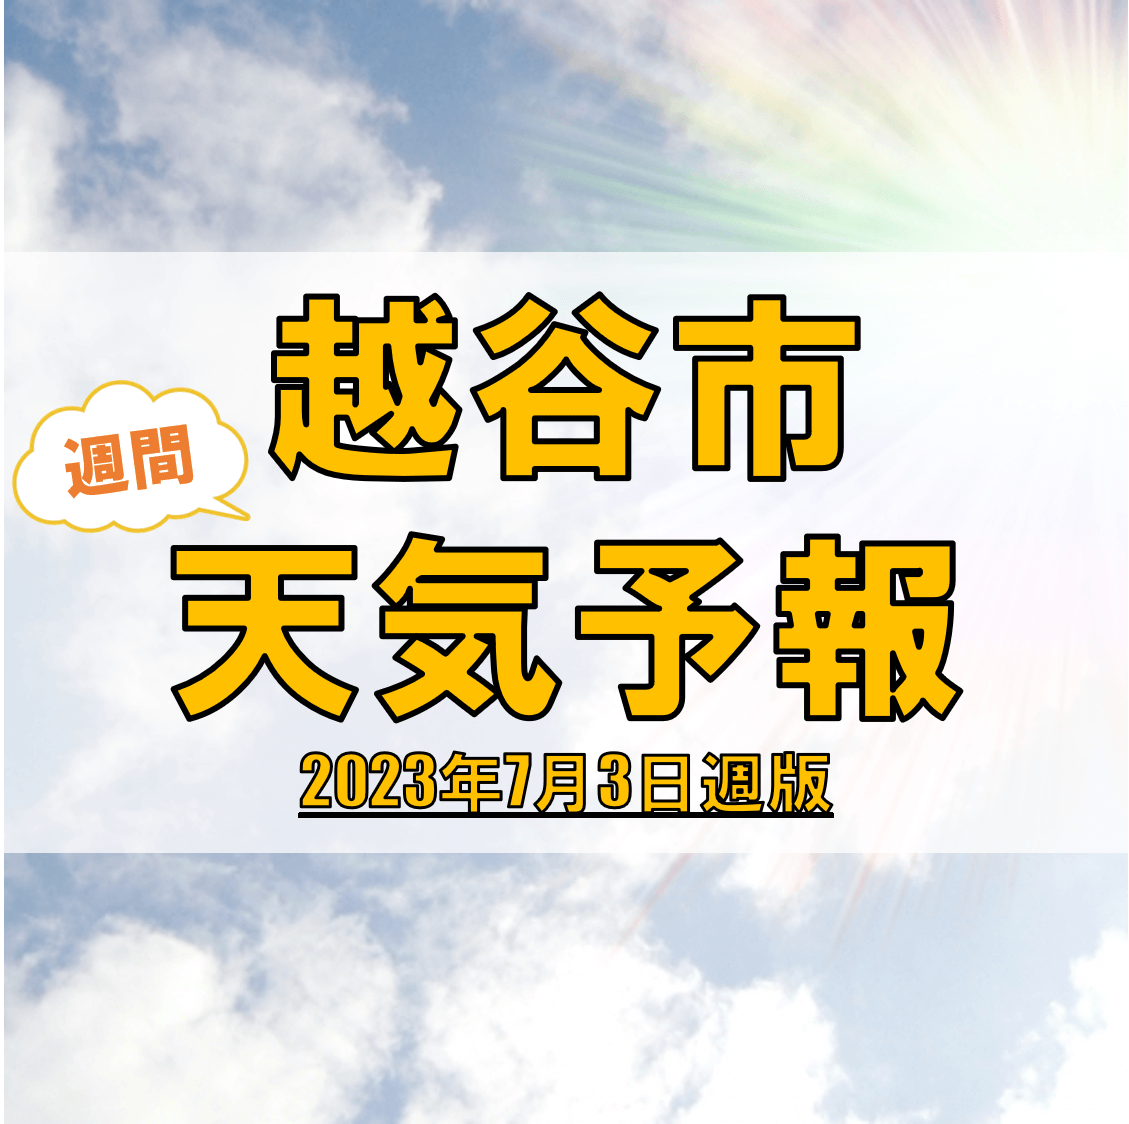 越谷市の天気 週間予報【2023年7月1日週】